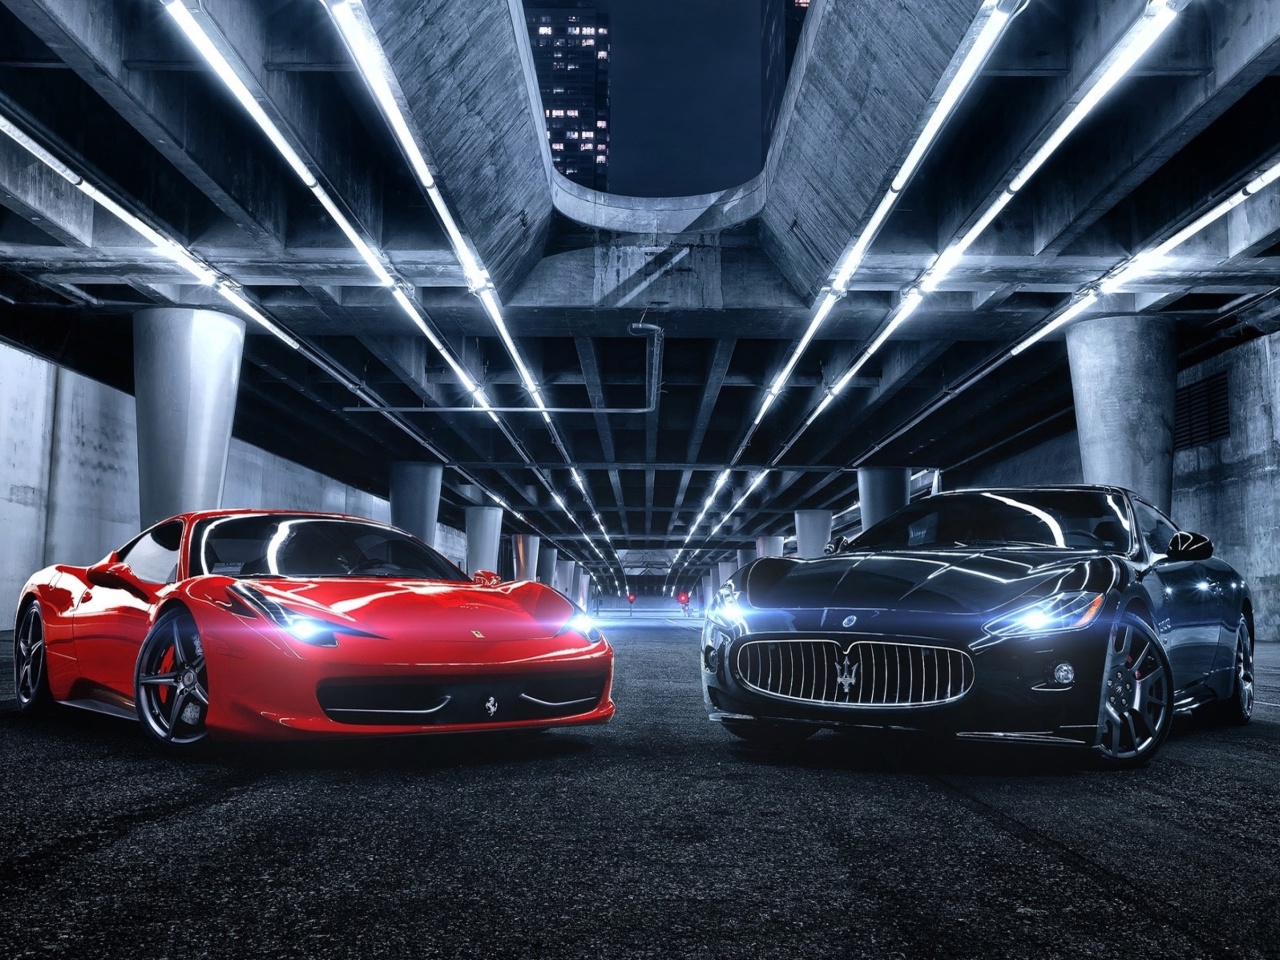 Das Ferrari compare Maserati Wallpaper 1280x960